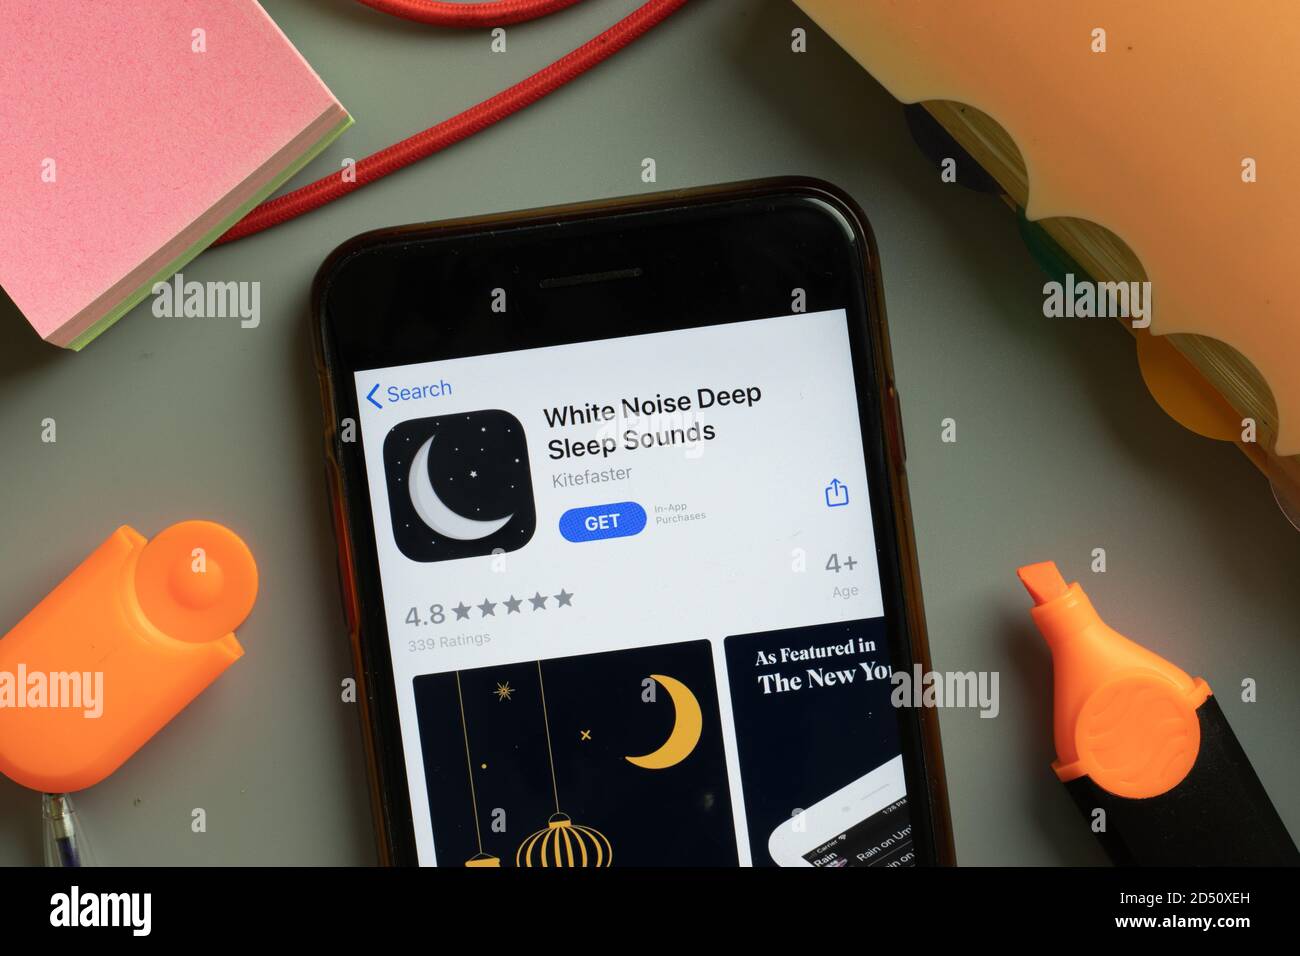 New York, États-Unis - 29 septembre 2020 : White Noise Deep Sleep Sounds logo de l'application mobile sur l'écran du téléphone gros plan, illustration éditoriale Banque D'Images